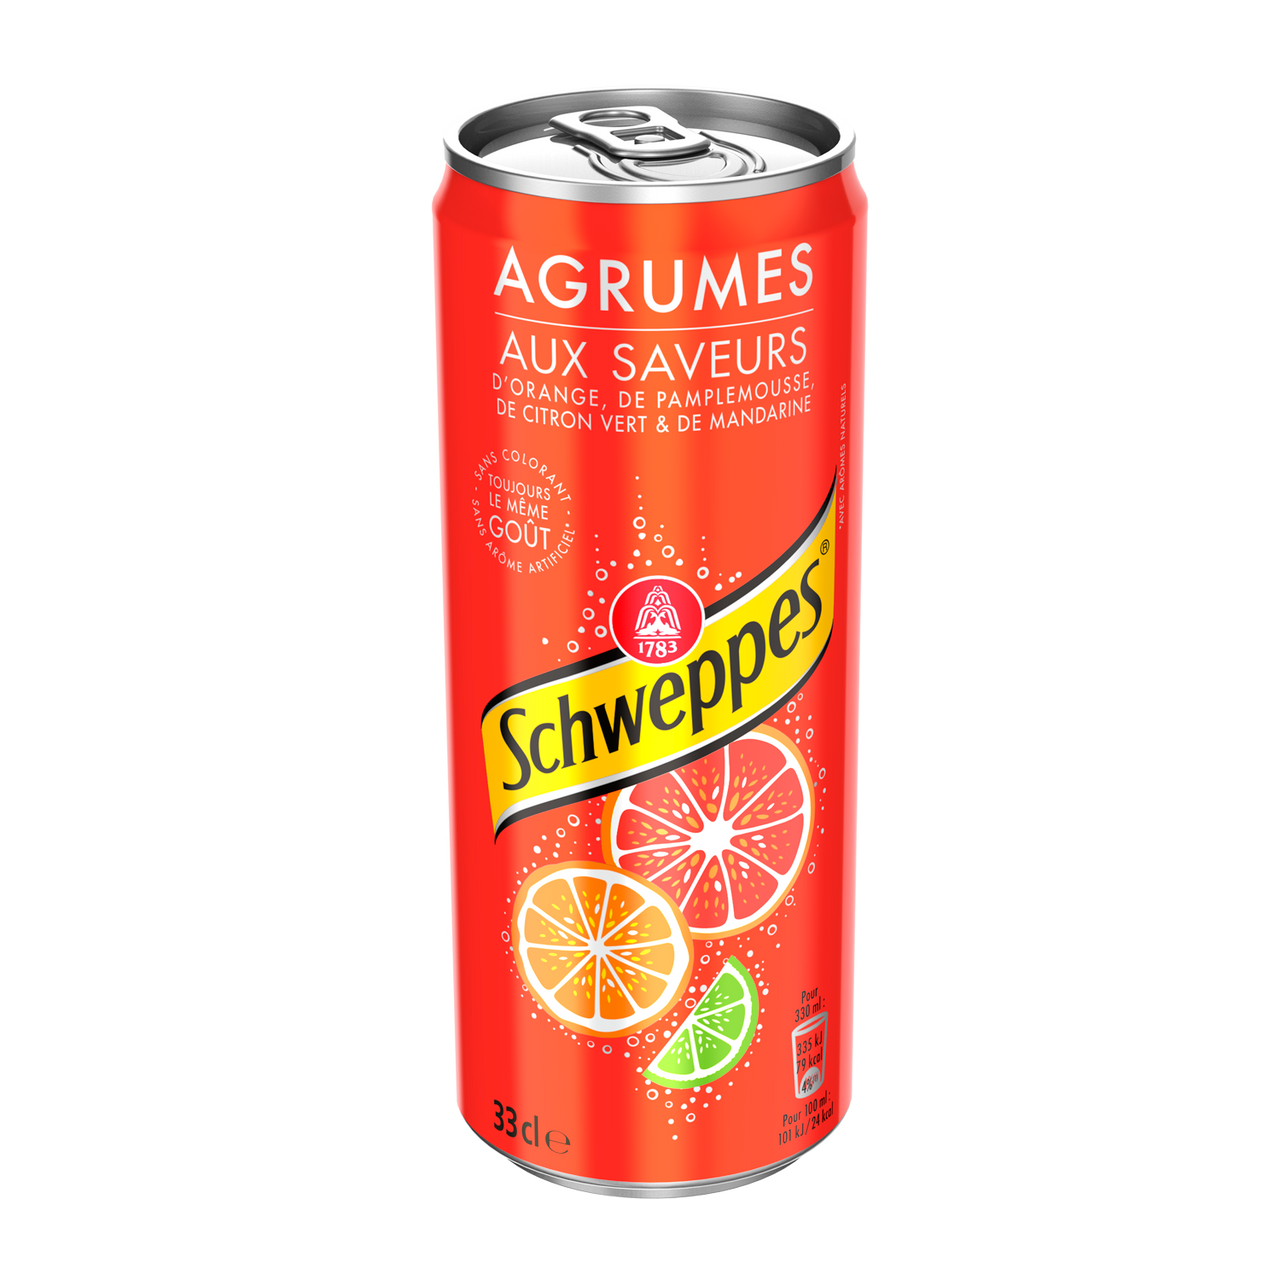 Orangina Citrus Soda